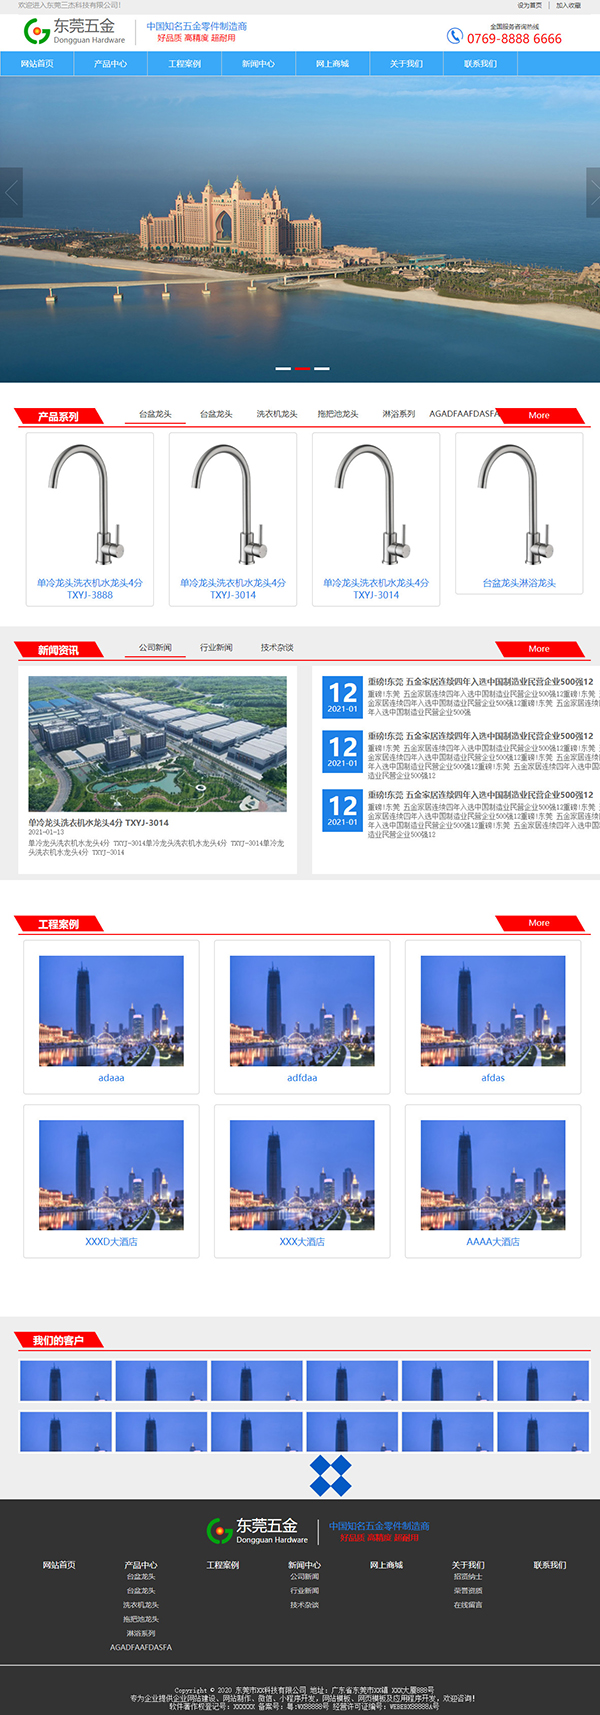 深圳宇行科技-五金行业通用响应式模板网站设计模板